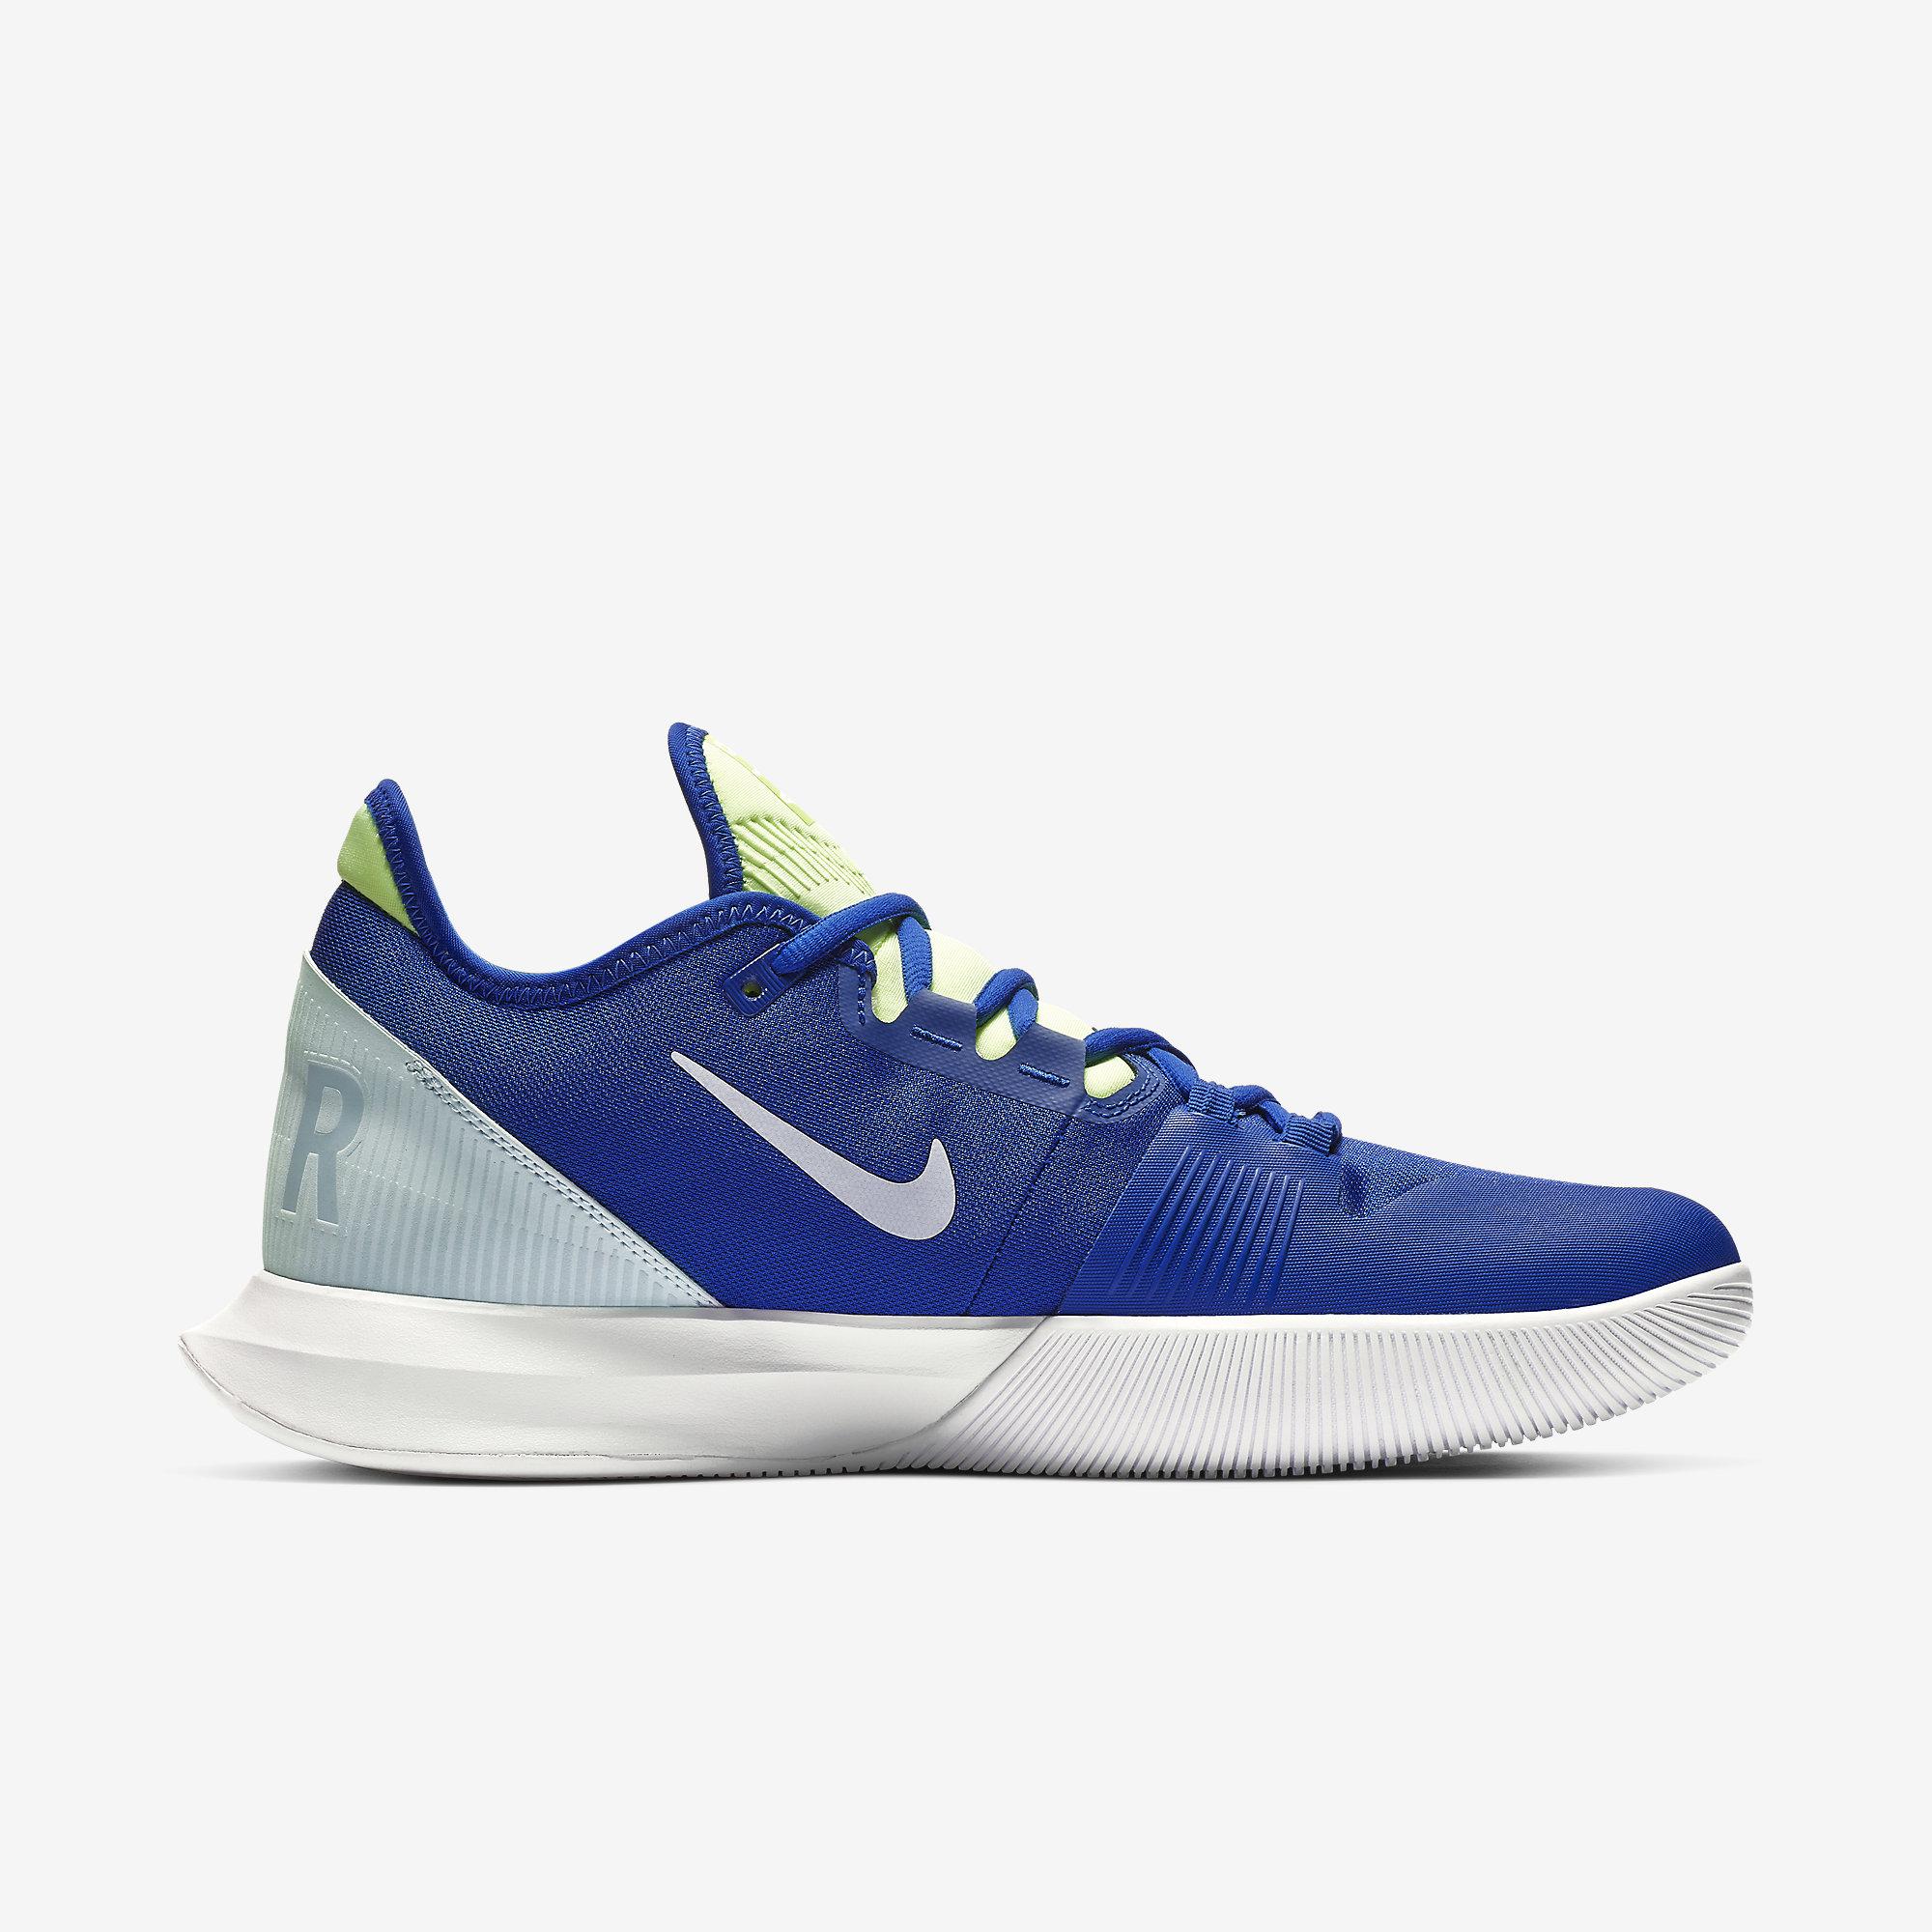 Nike Mens Air Max Wildcard Tennis Shoes - Indigo Force/Half Blue/White ...